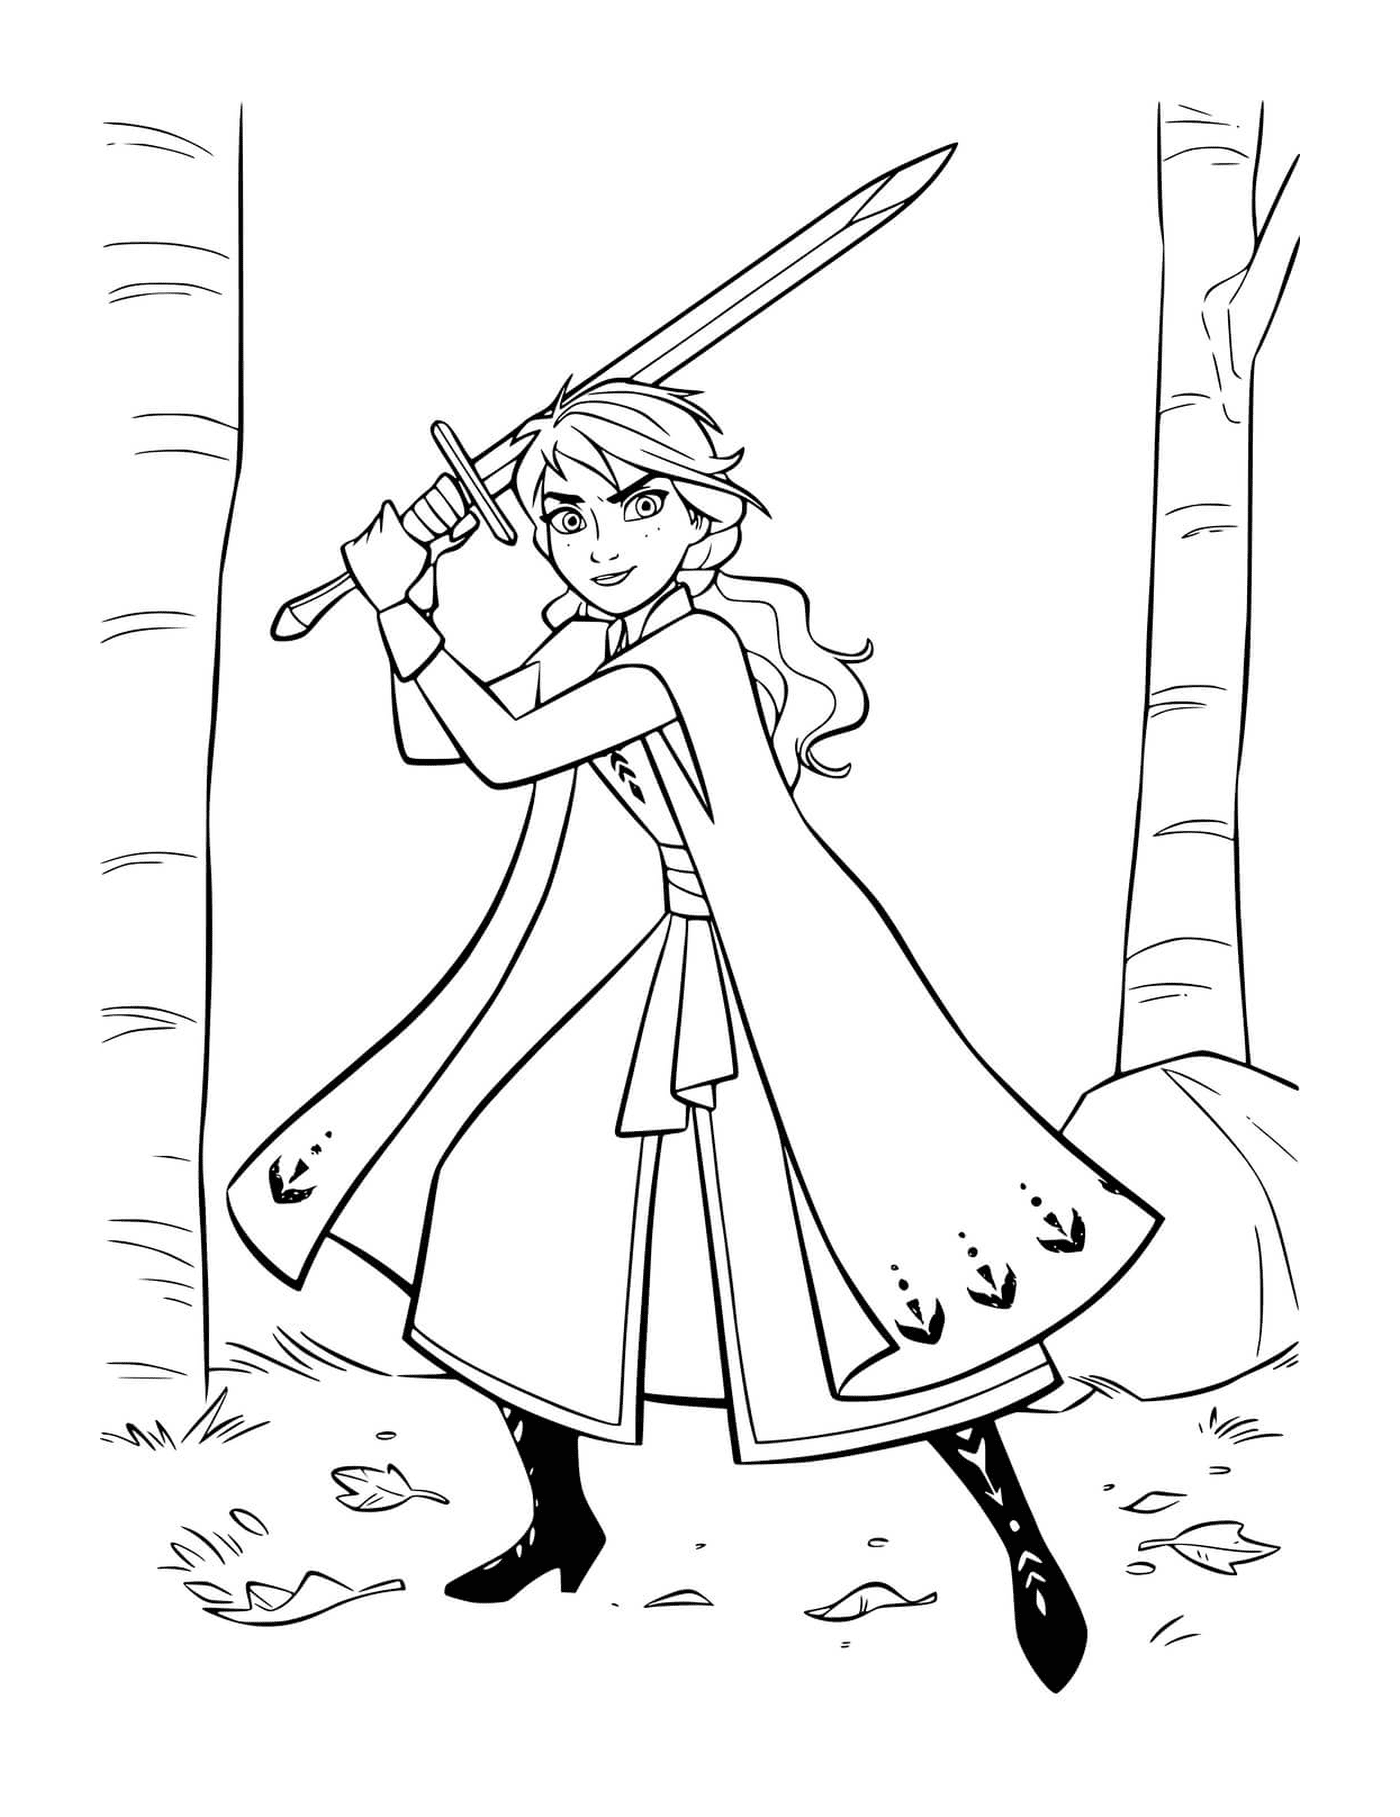  Anna difende il regno con la spada 